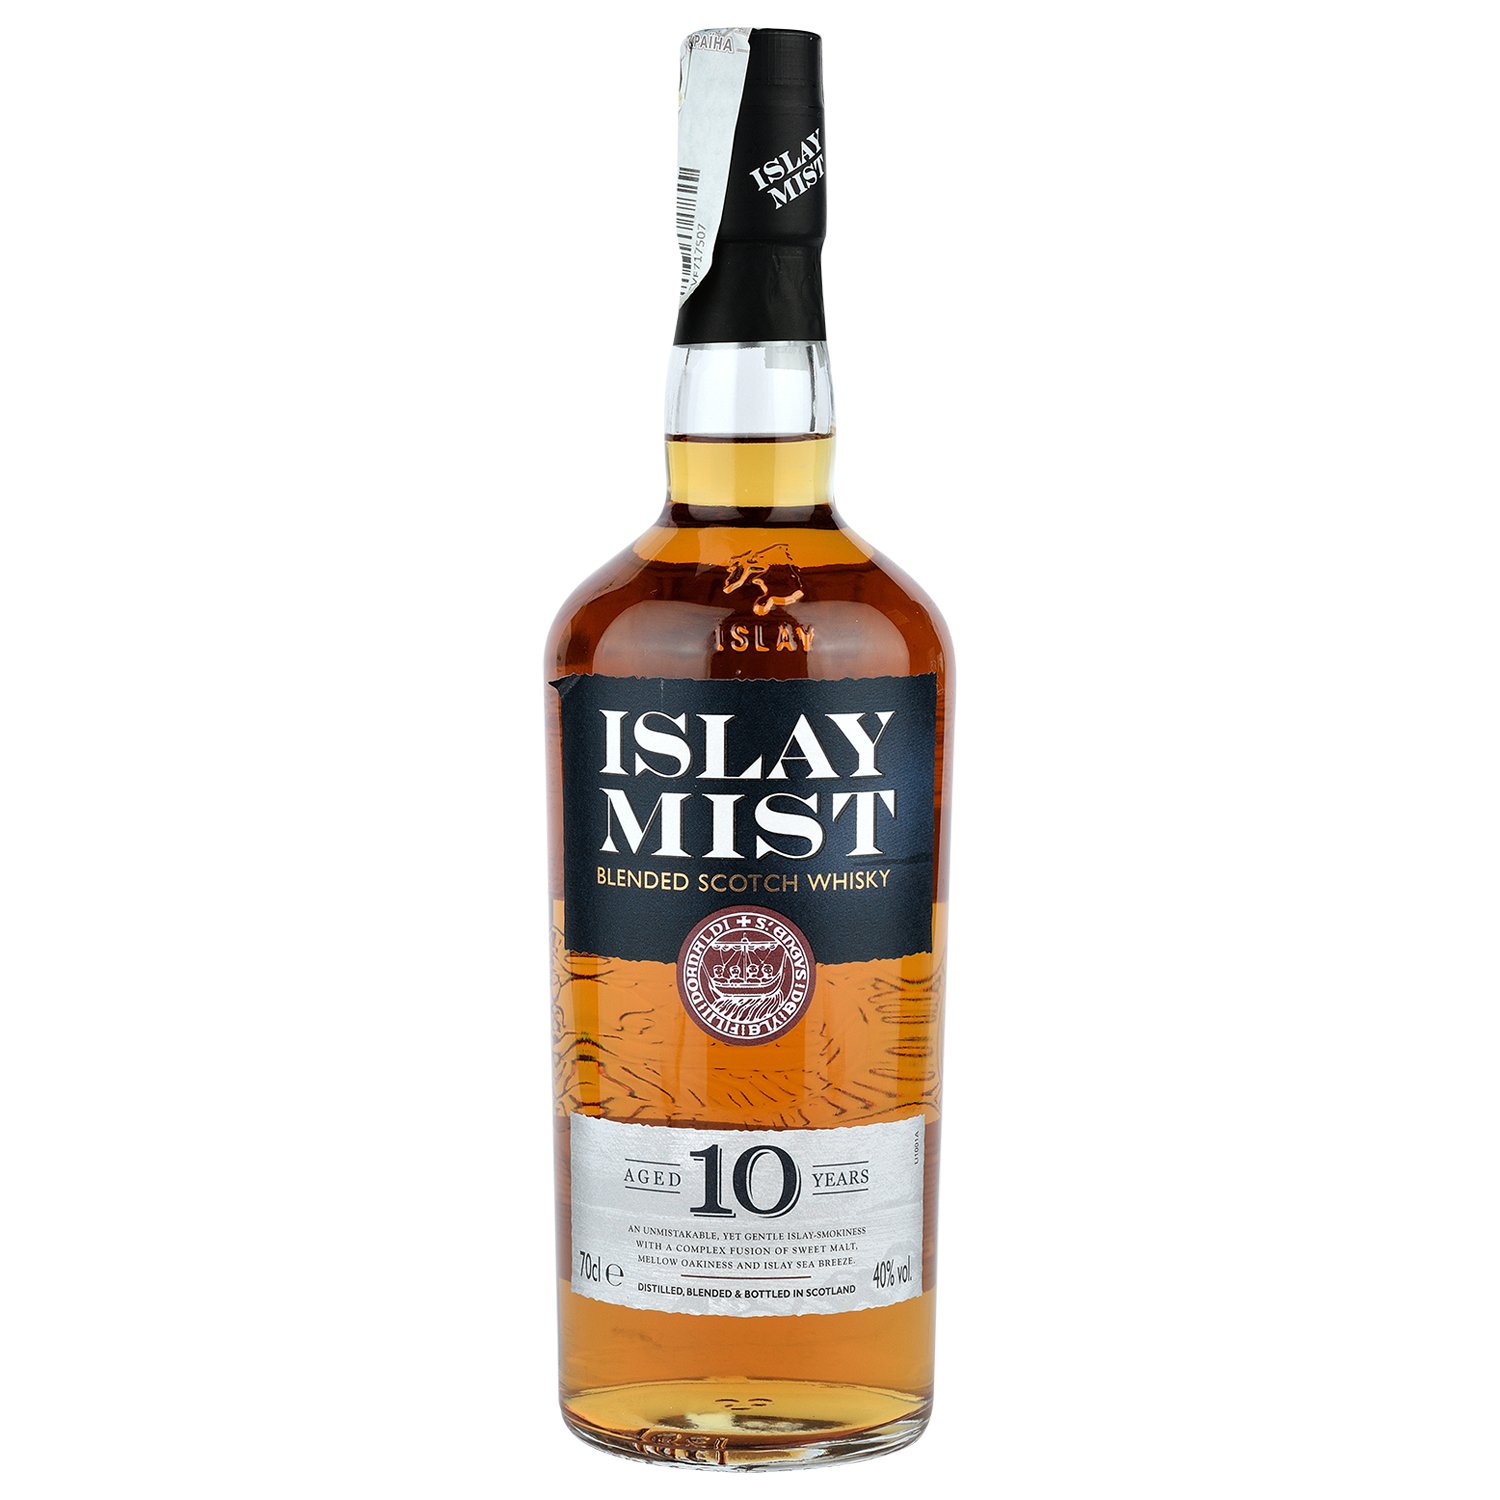 Віскі Islay Mist Blended Scotch Whisky 10 yo, в подарунковій упаковці, 40%, 0,7 л - фото 3